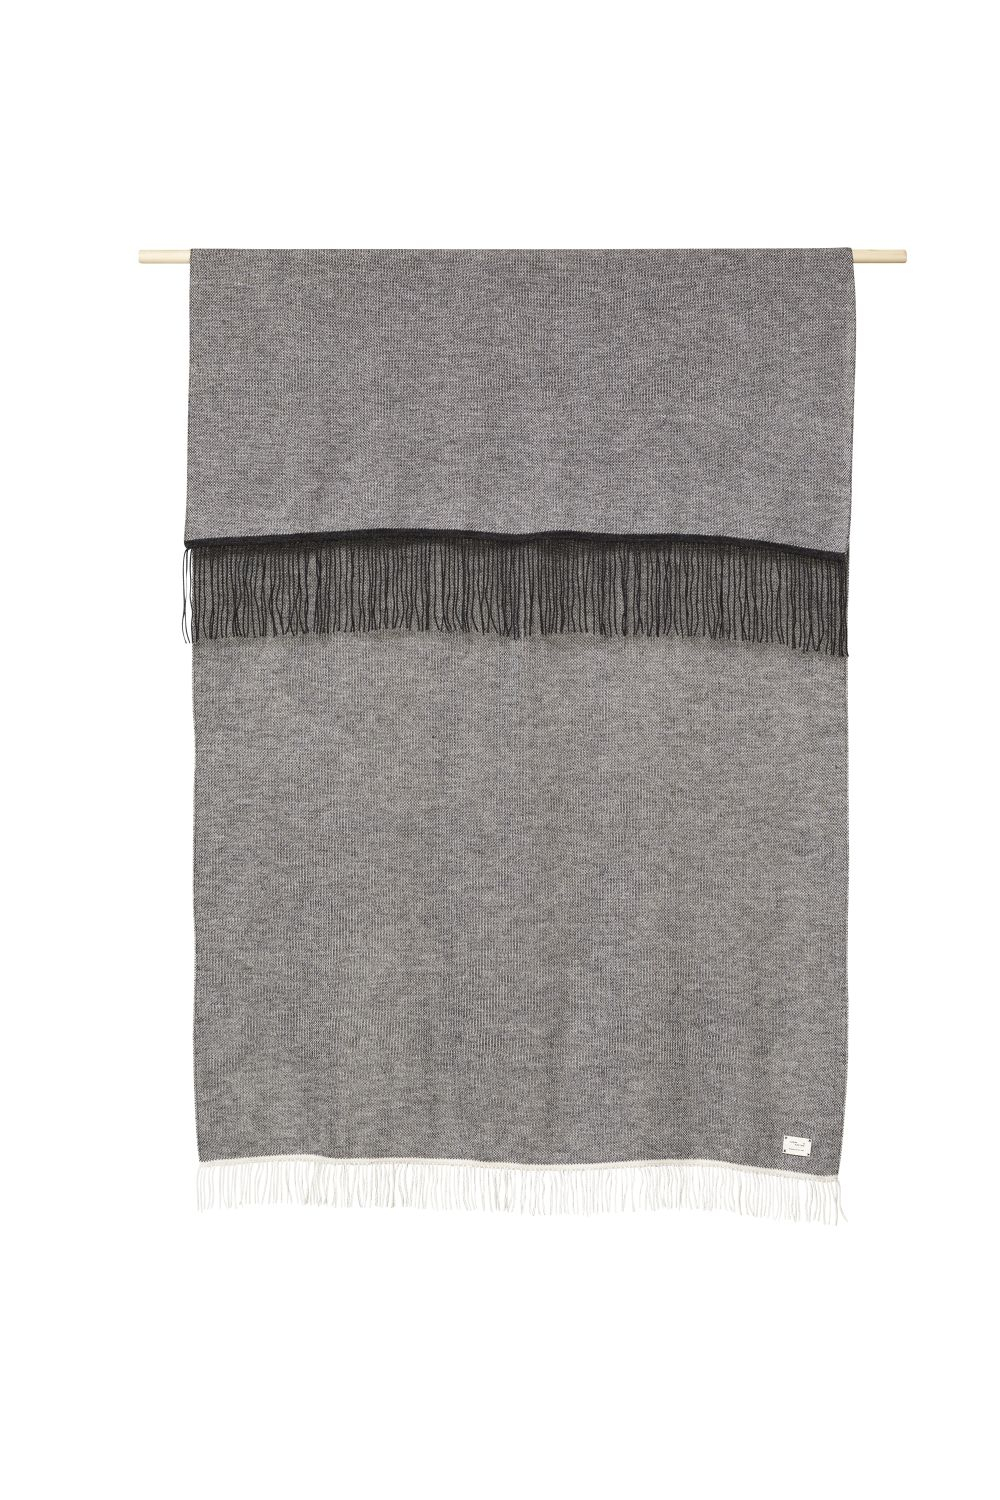 Aymara Decke Wolle Grau